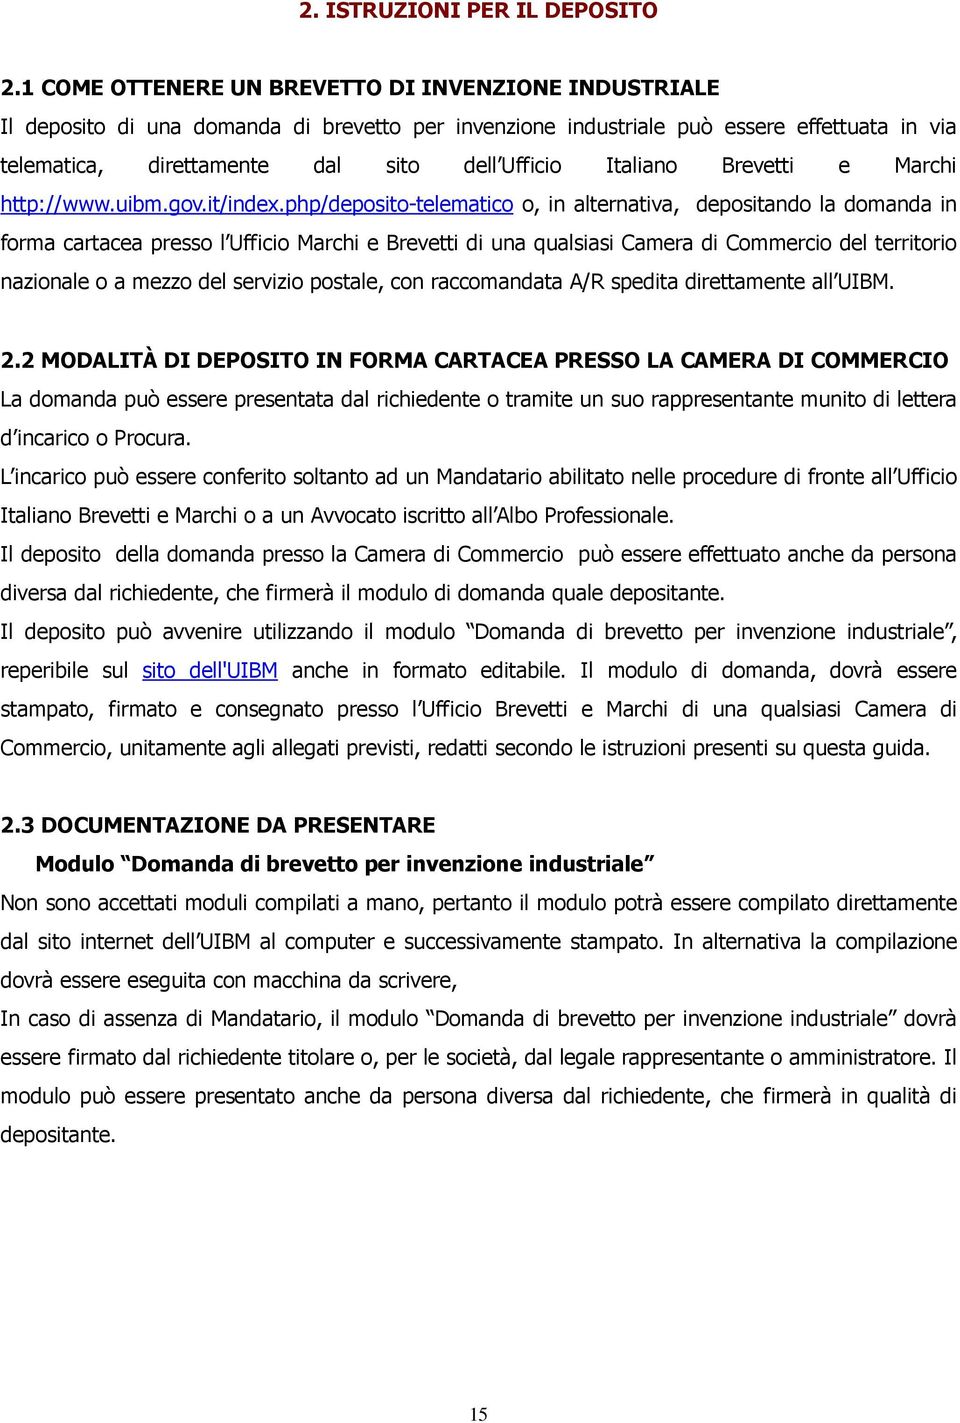 Italiano Brevetti e Marchi http://www.uibm.gov.it/index.